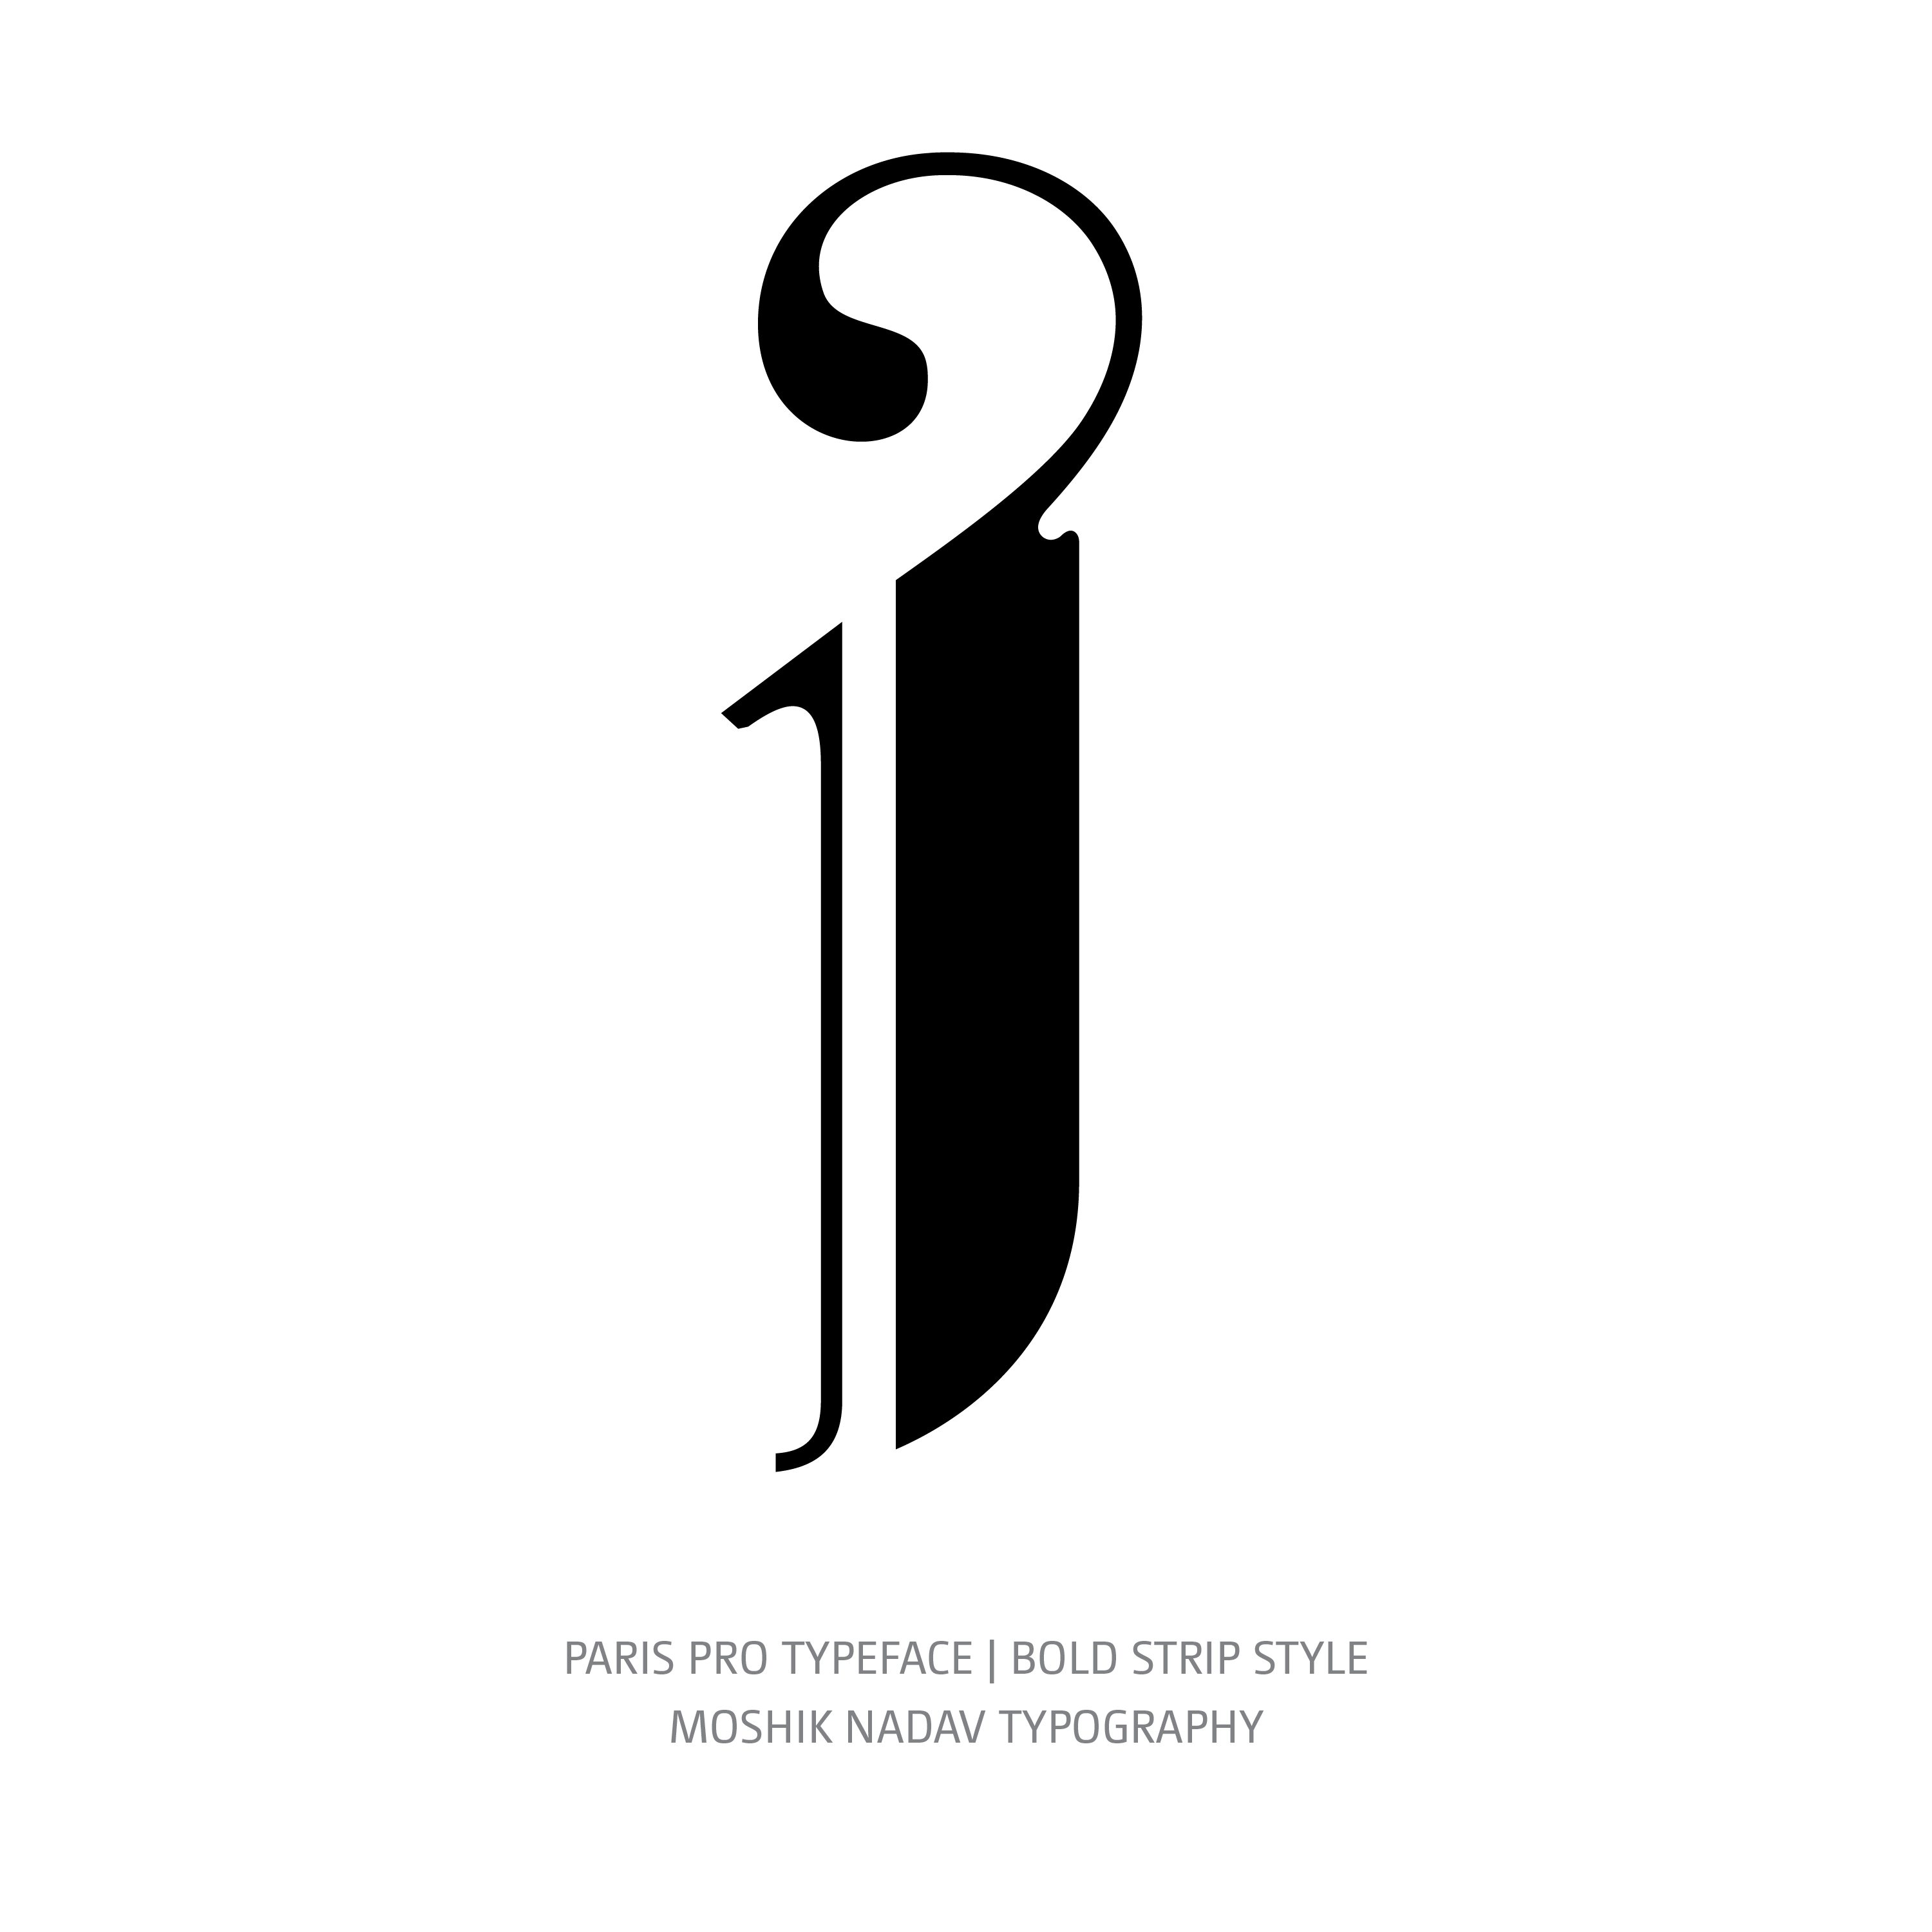 Paris Pro Typeface Bold Strip j